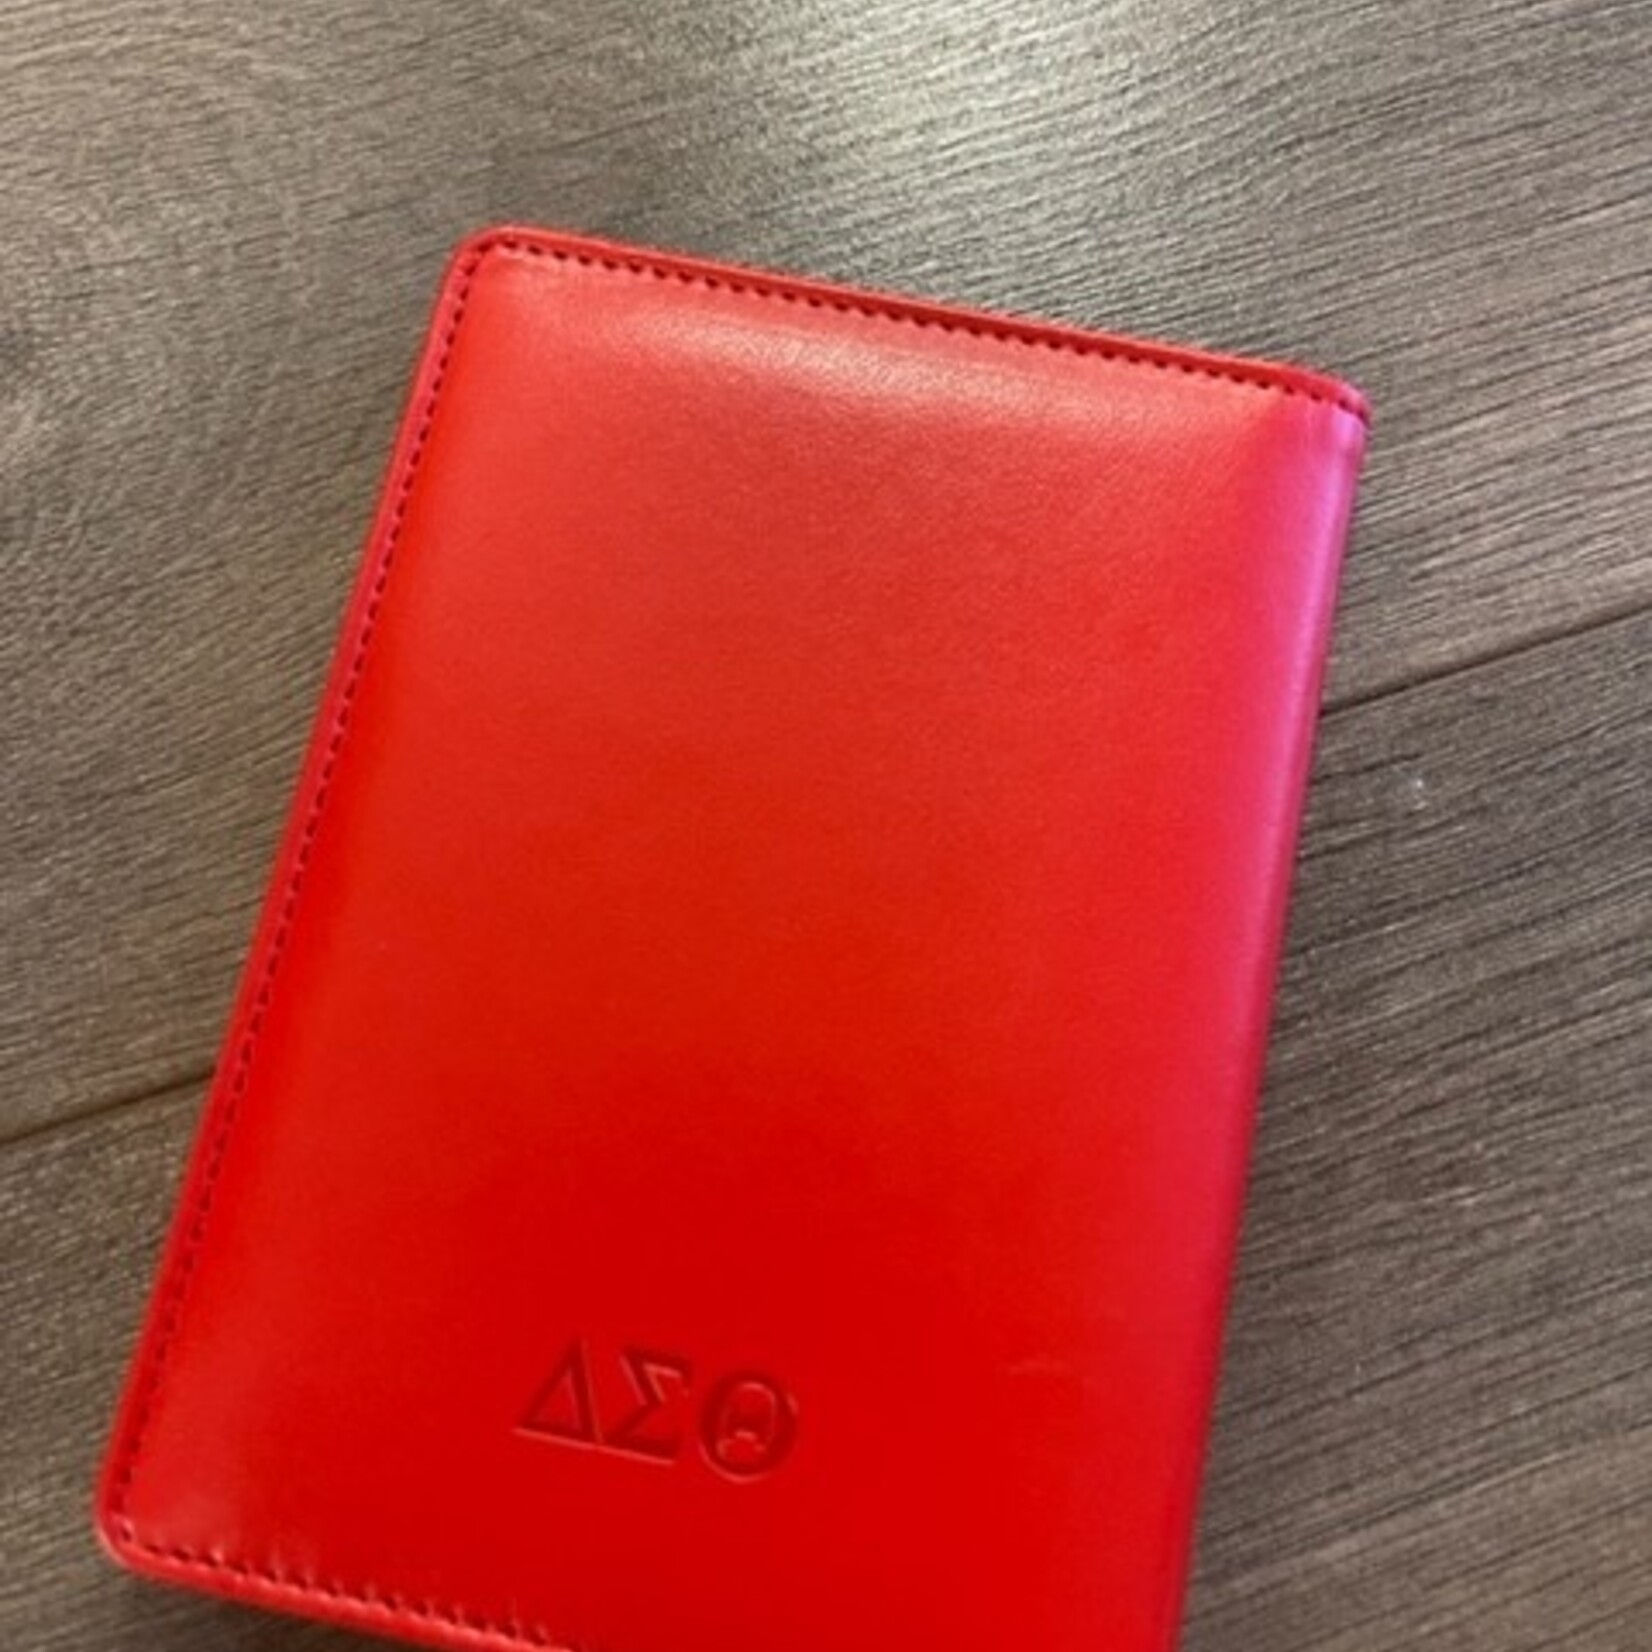 ΔΣΘ DST Red Leather Passport Cover